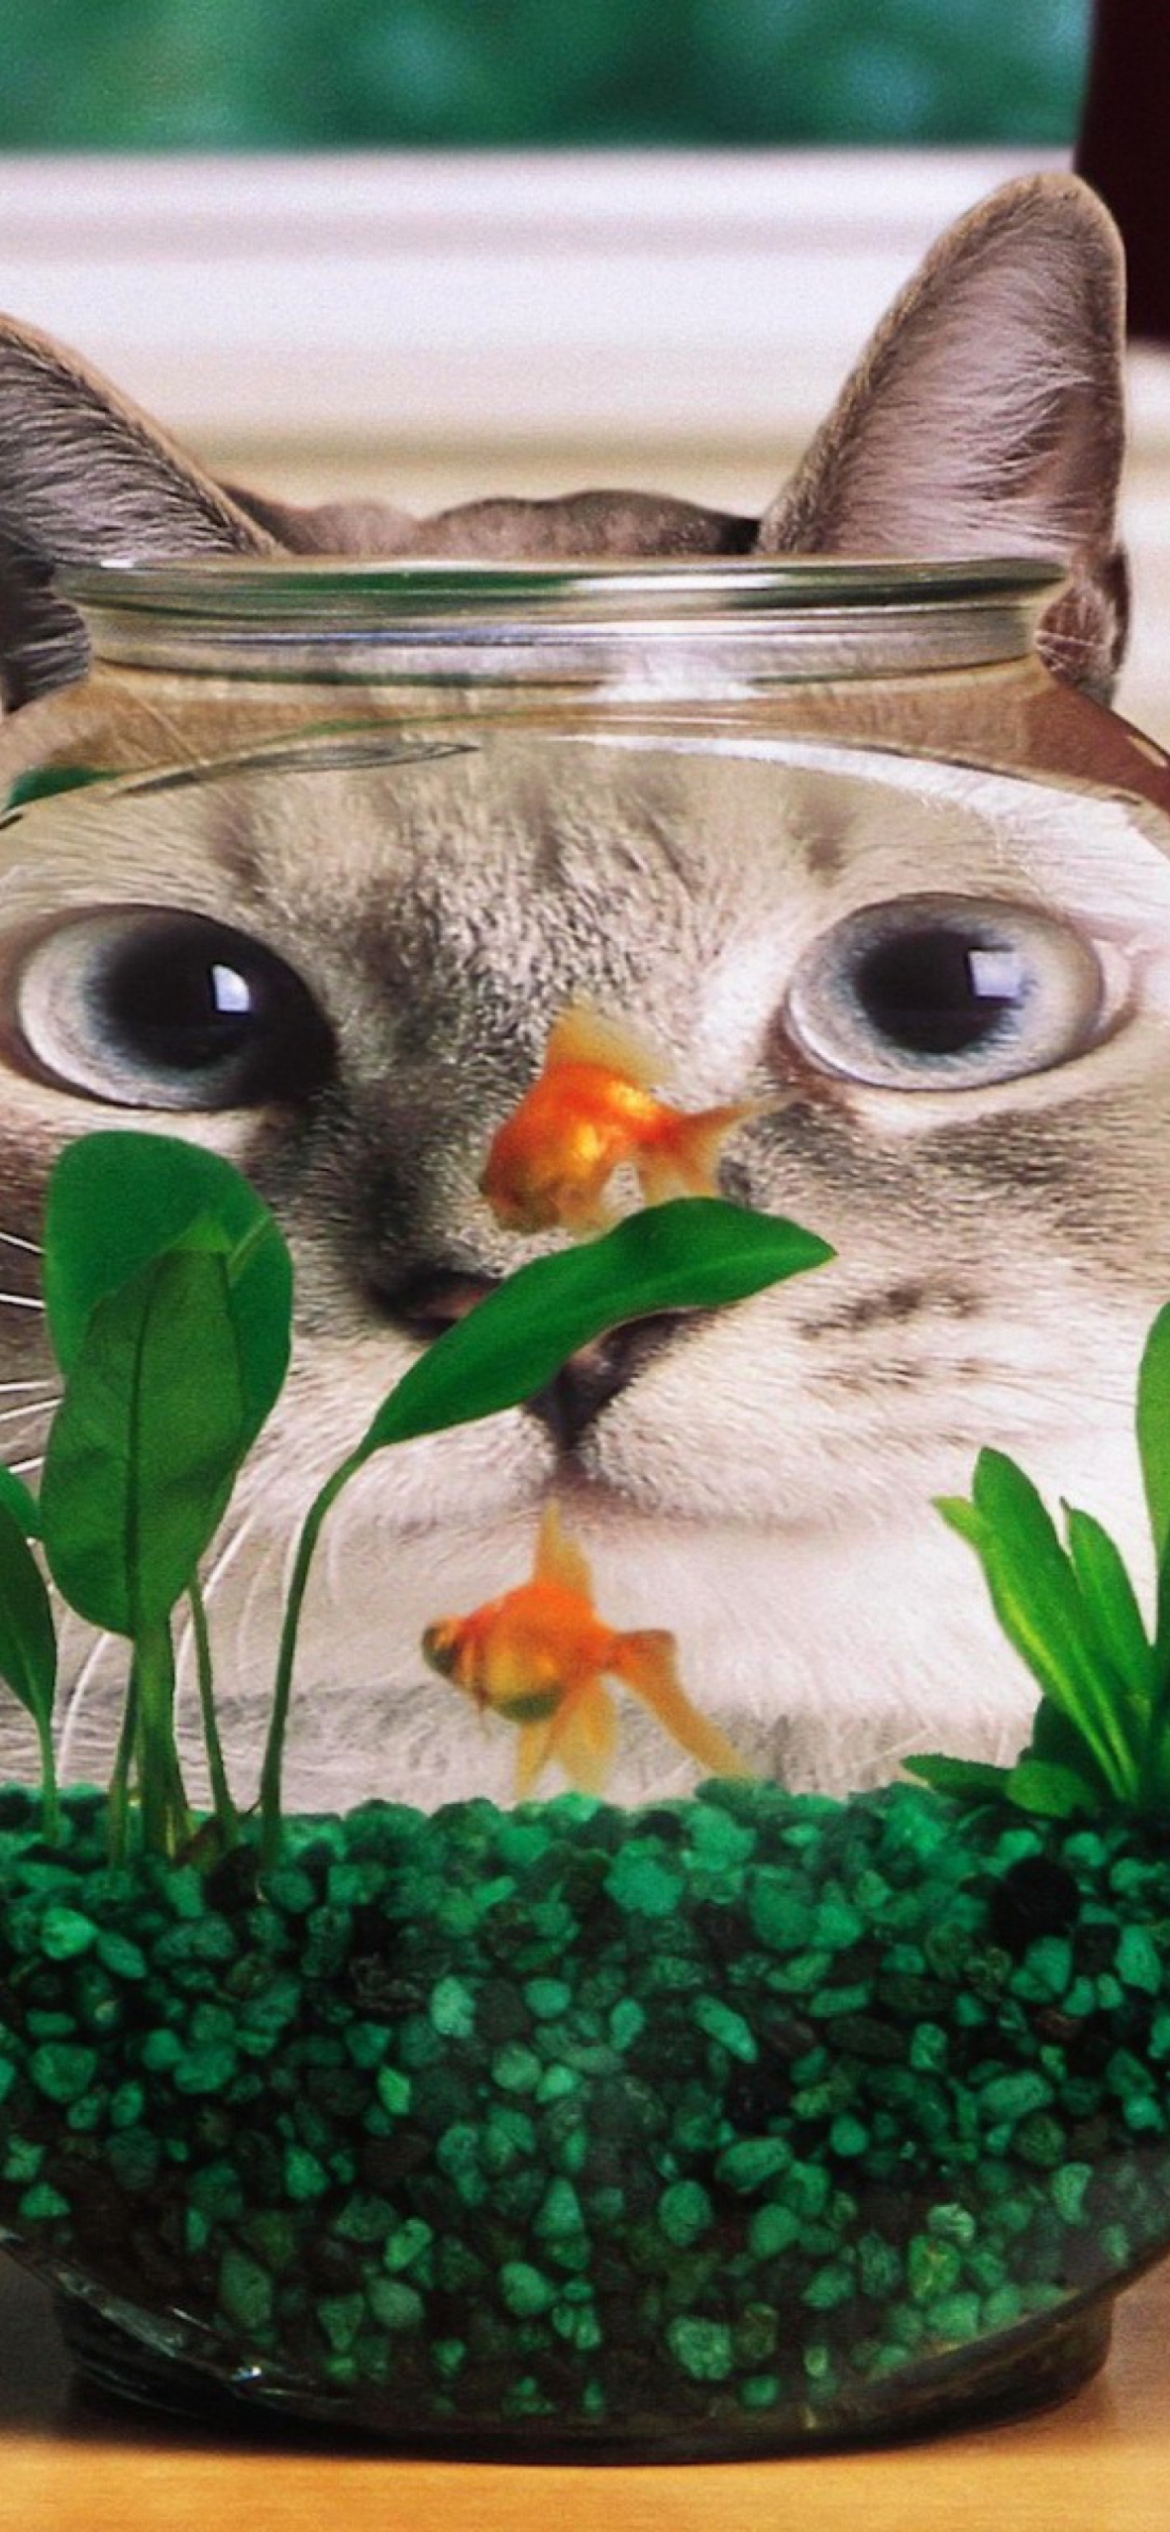 Aquarium Cat Funny Face Distortion wallpaper 1170x2532